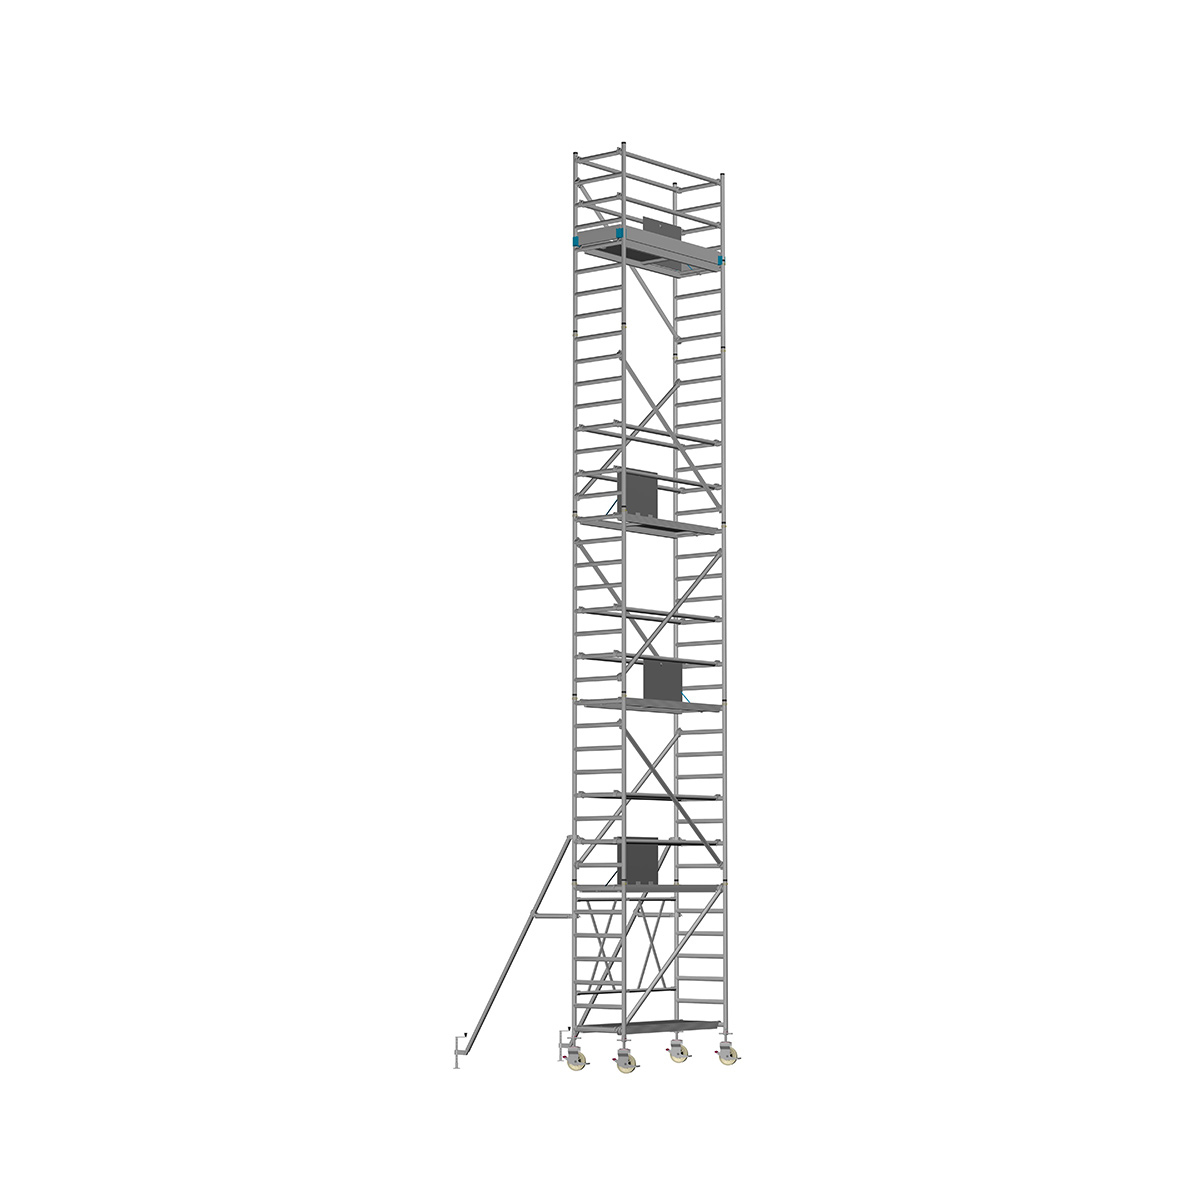 Chiemsee 2 PROFI- Länge: 2,54 m - Breite: 0,74 m, Standhöhe 1,00 m